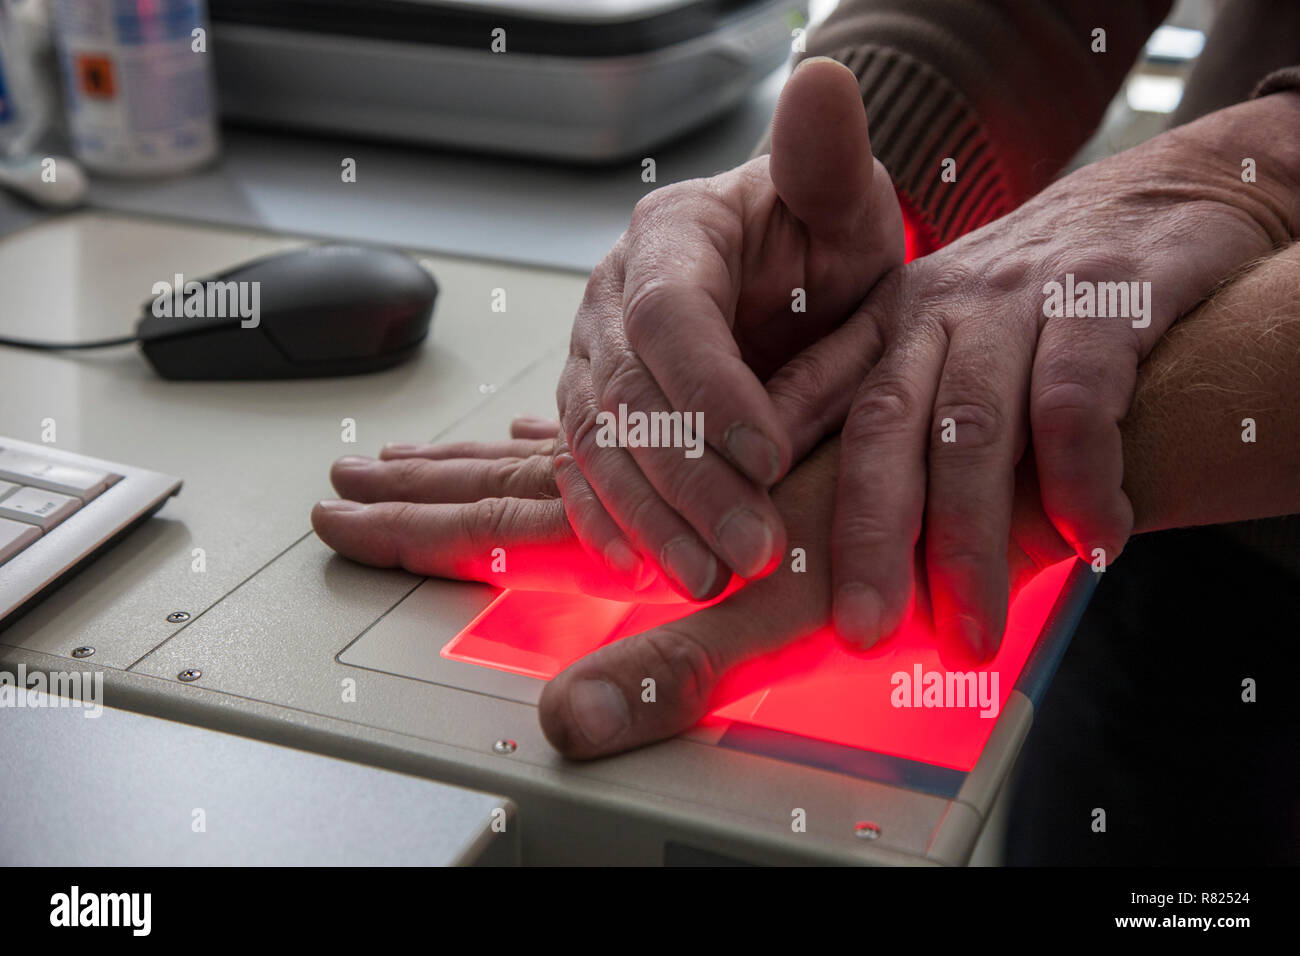 Des empreintes digitales et palmaires d'une personne suspecte sont enregistrés avec un scanner, Allemagne Banque D'Images